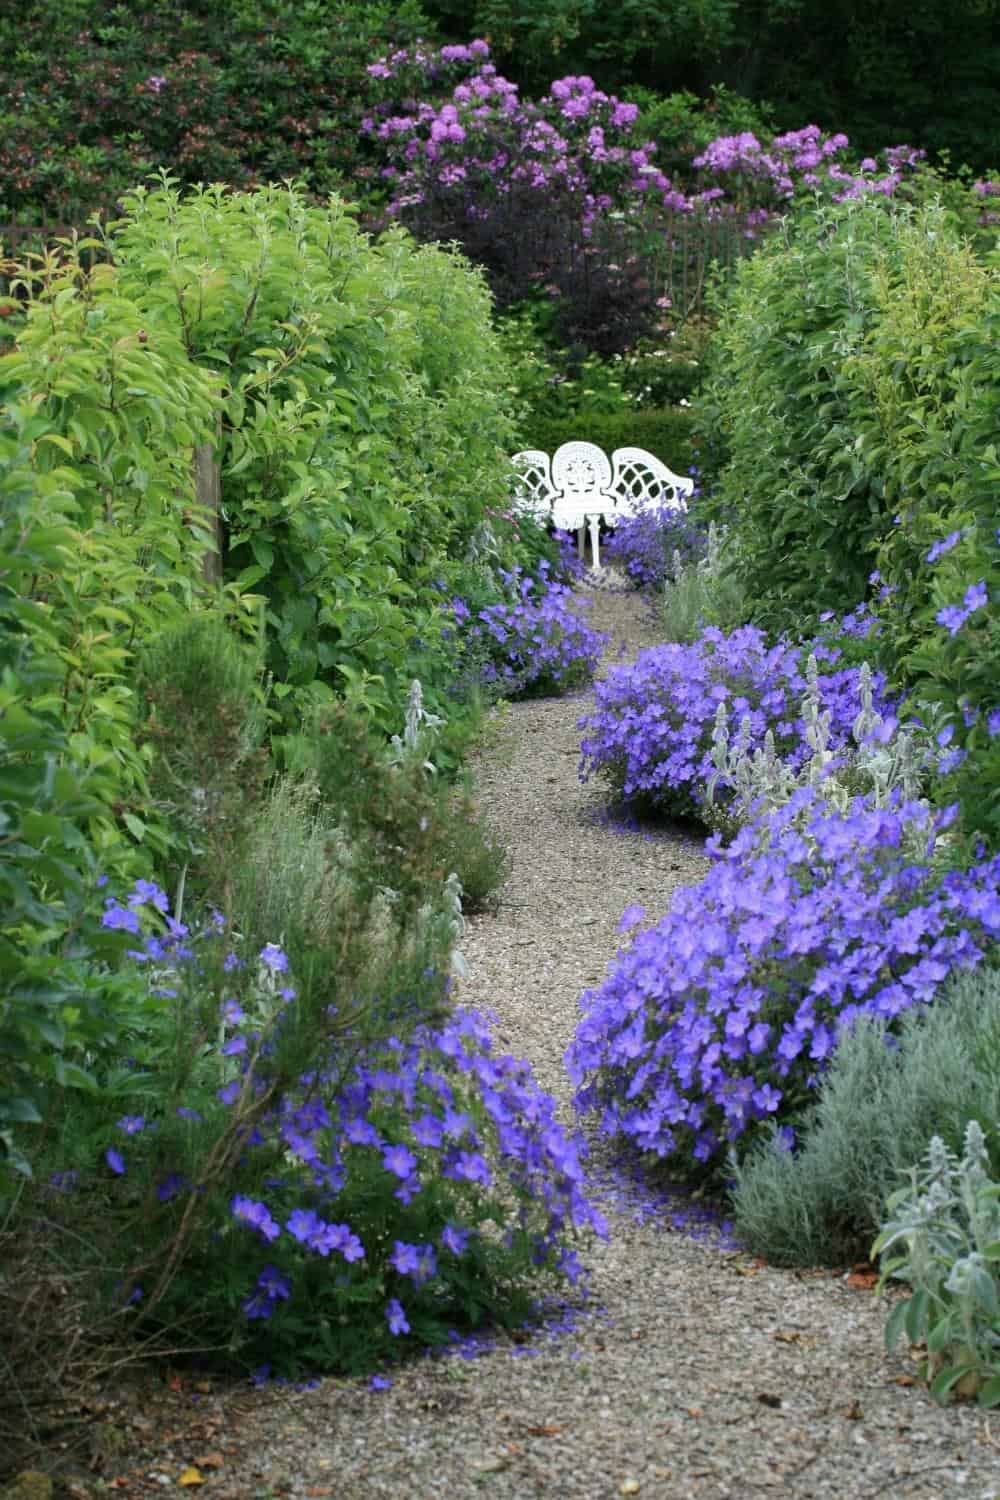 pea gravel garden path through lush garden with bench at the end